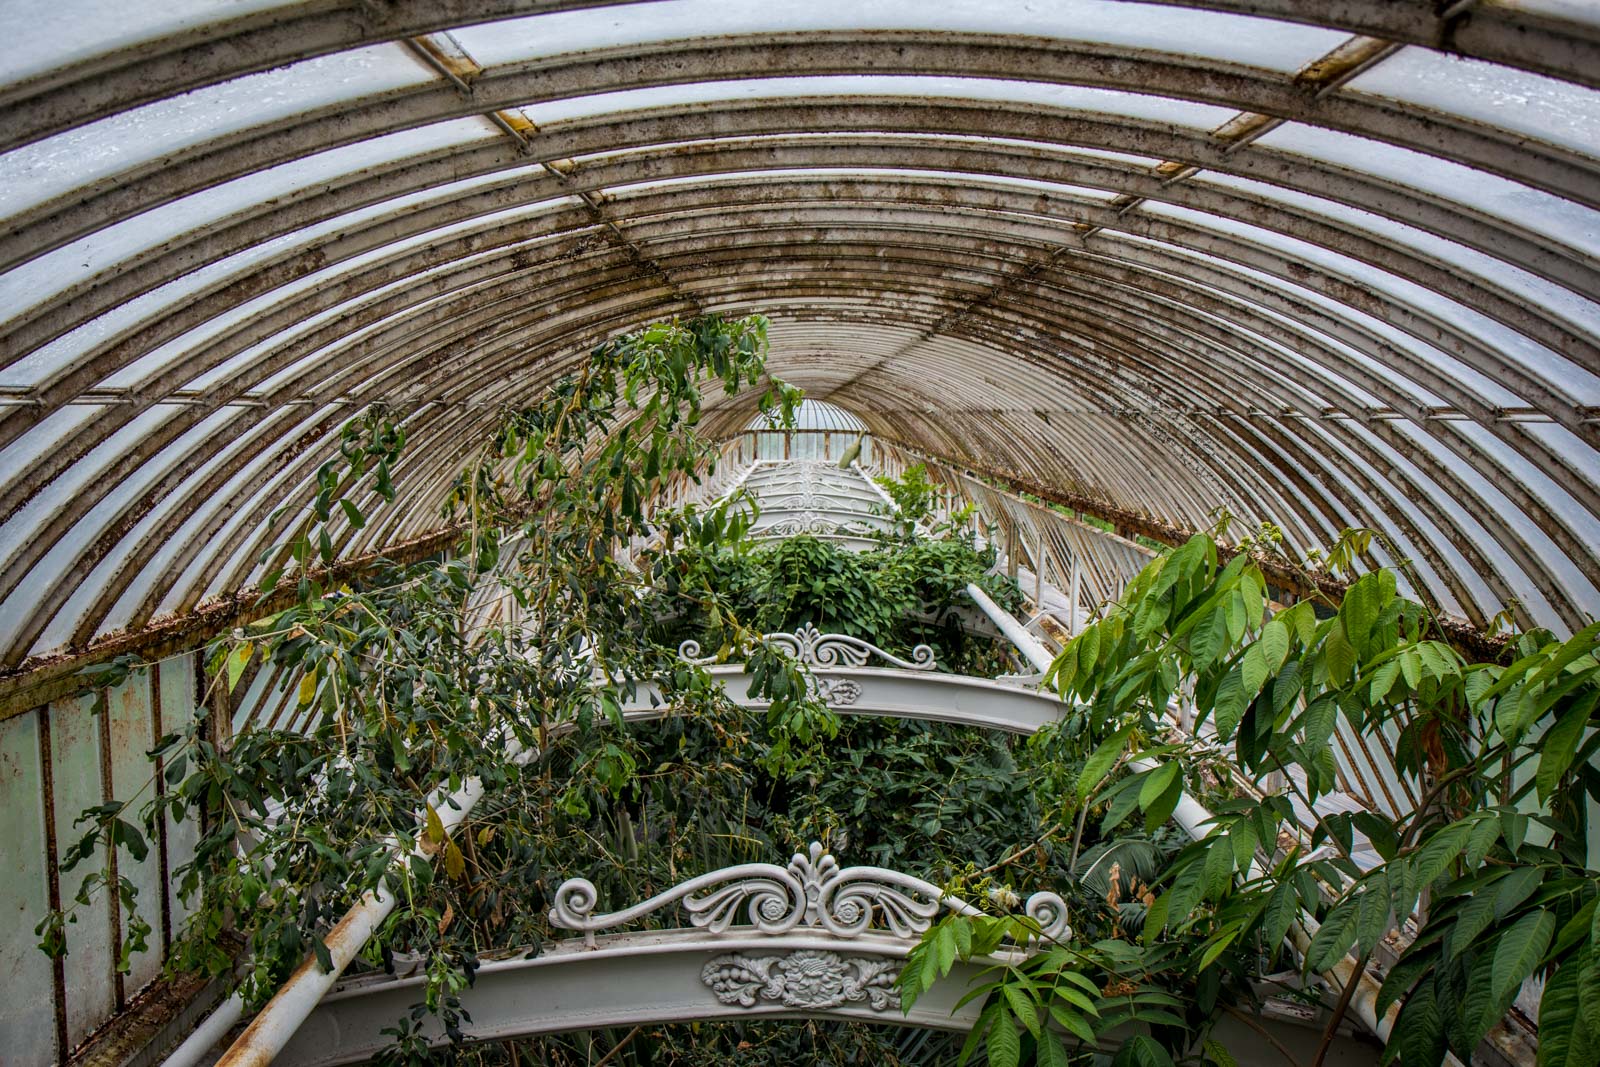 kew gardens, royal botanic gardens, london, england